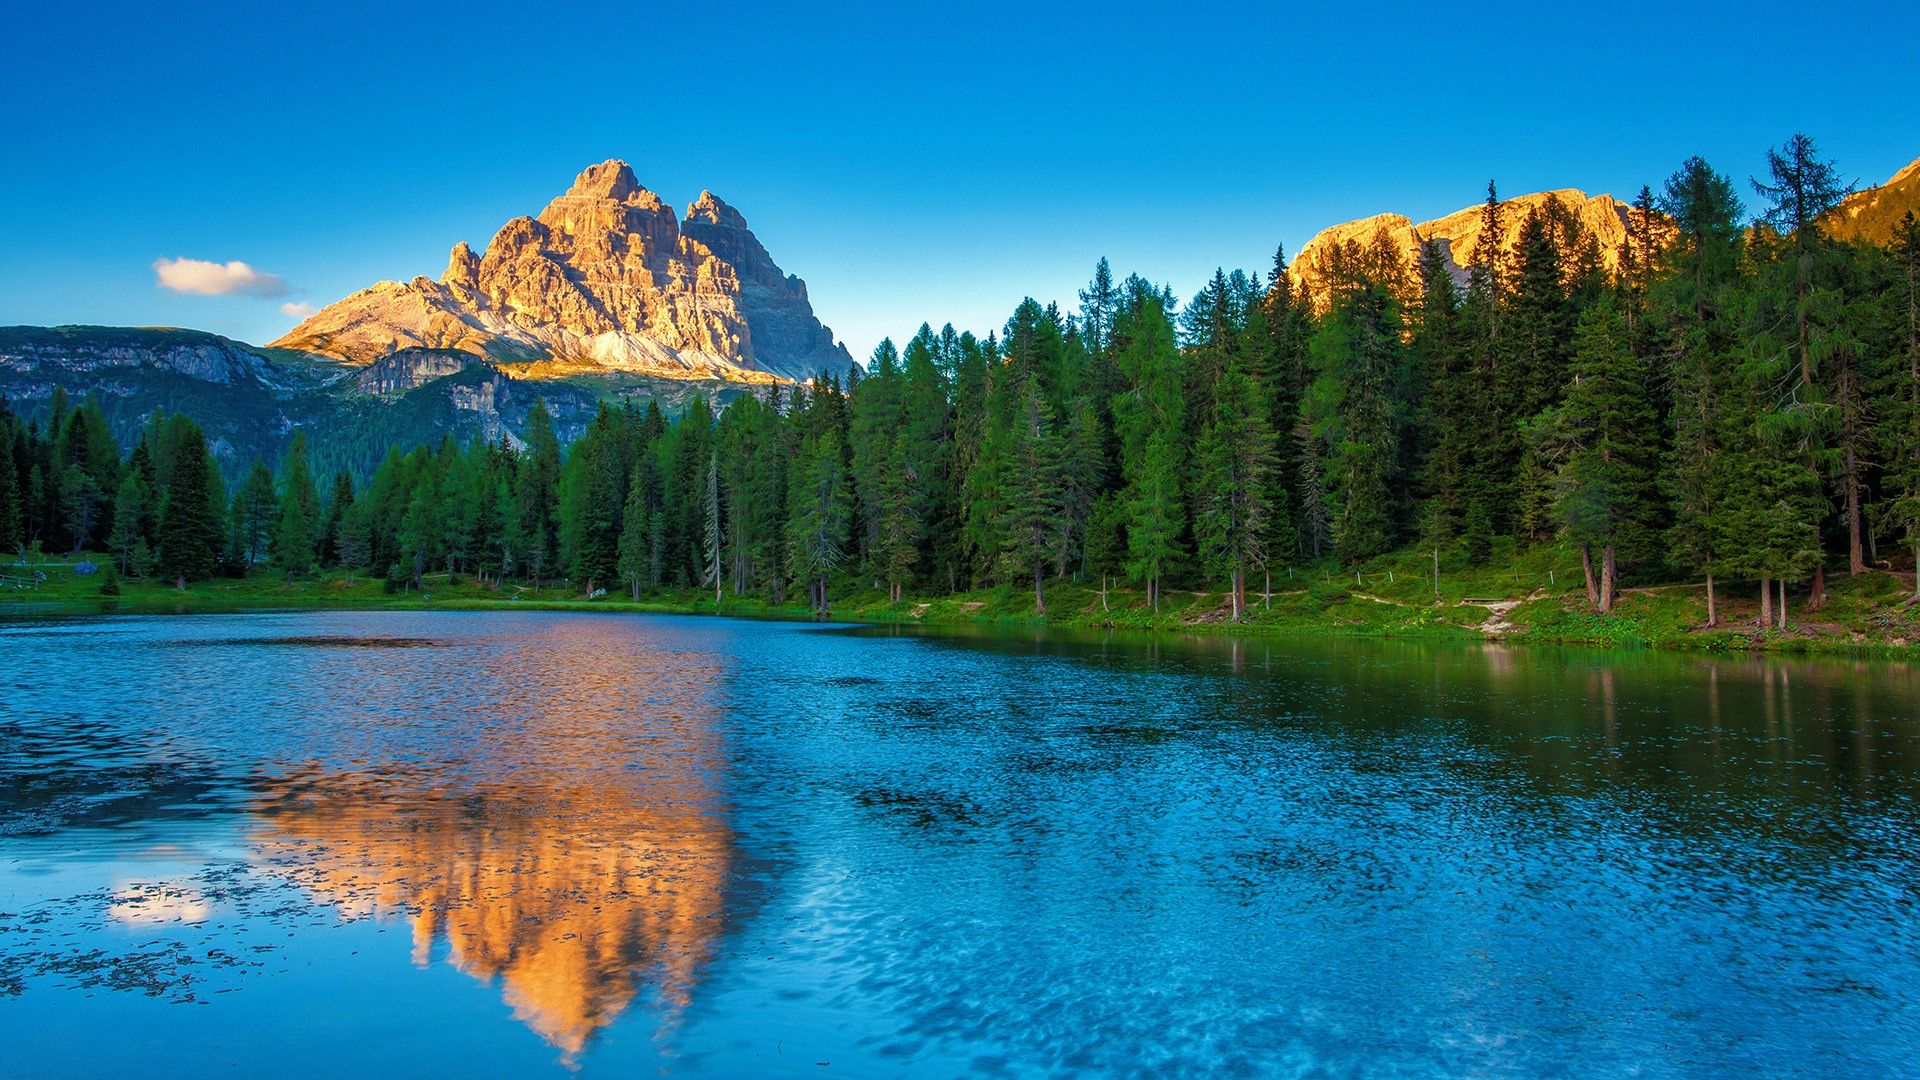 Landscape from the Dolomites, Lago Antorno, Belluno, Veneto, Italy. Windows 10 Spotlight Image